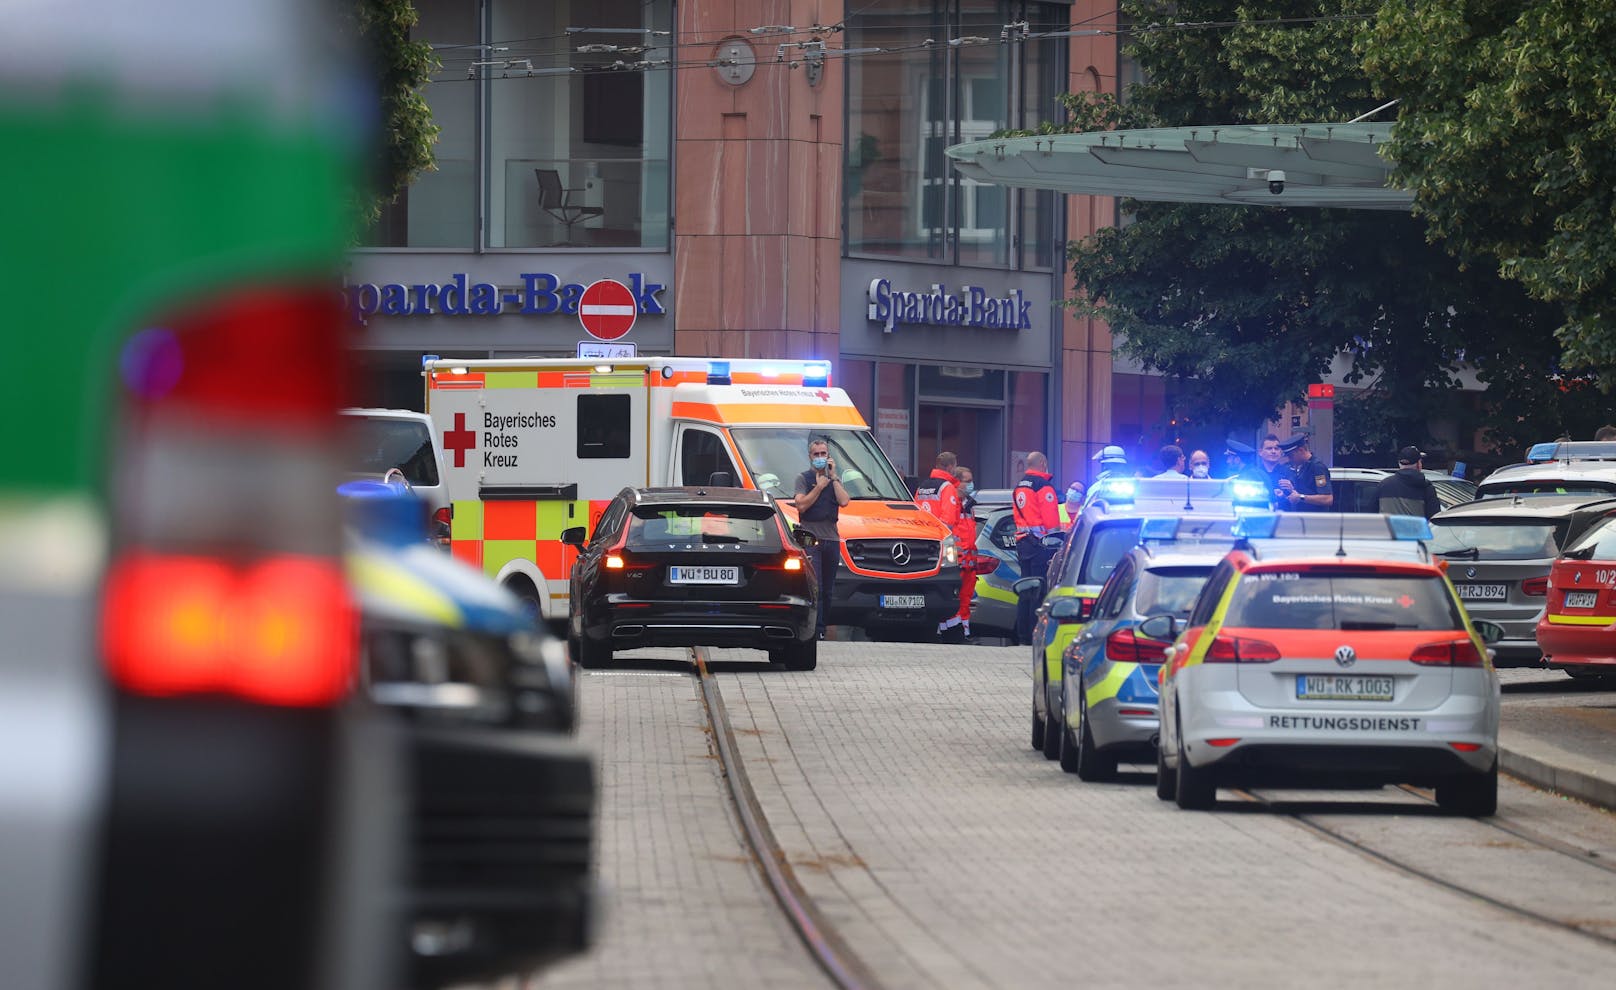 In der Würzburger Innenstadt ist es zu einem Gewaltverbrechen gekommen. Gemäß Medienberichten sind mindestens drei Personen tot